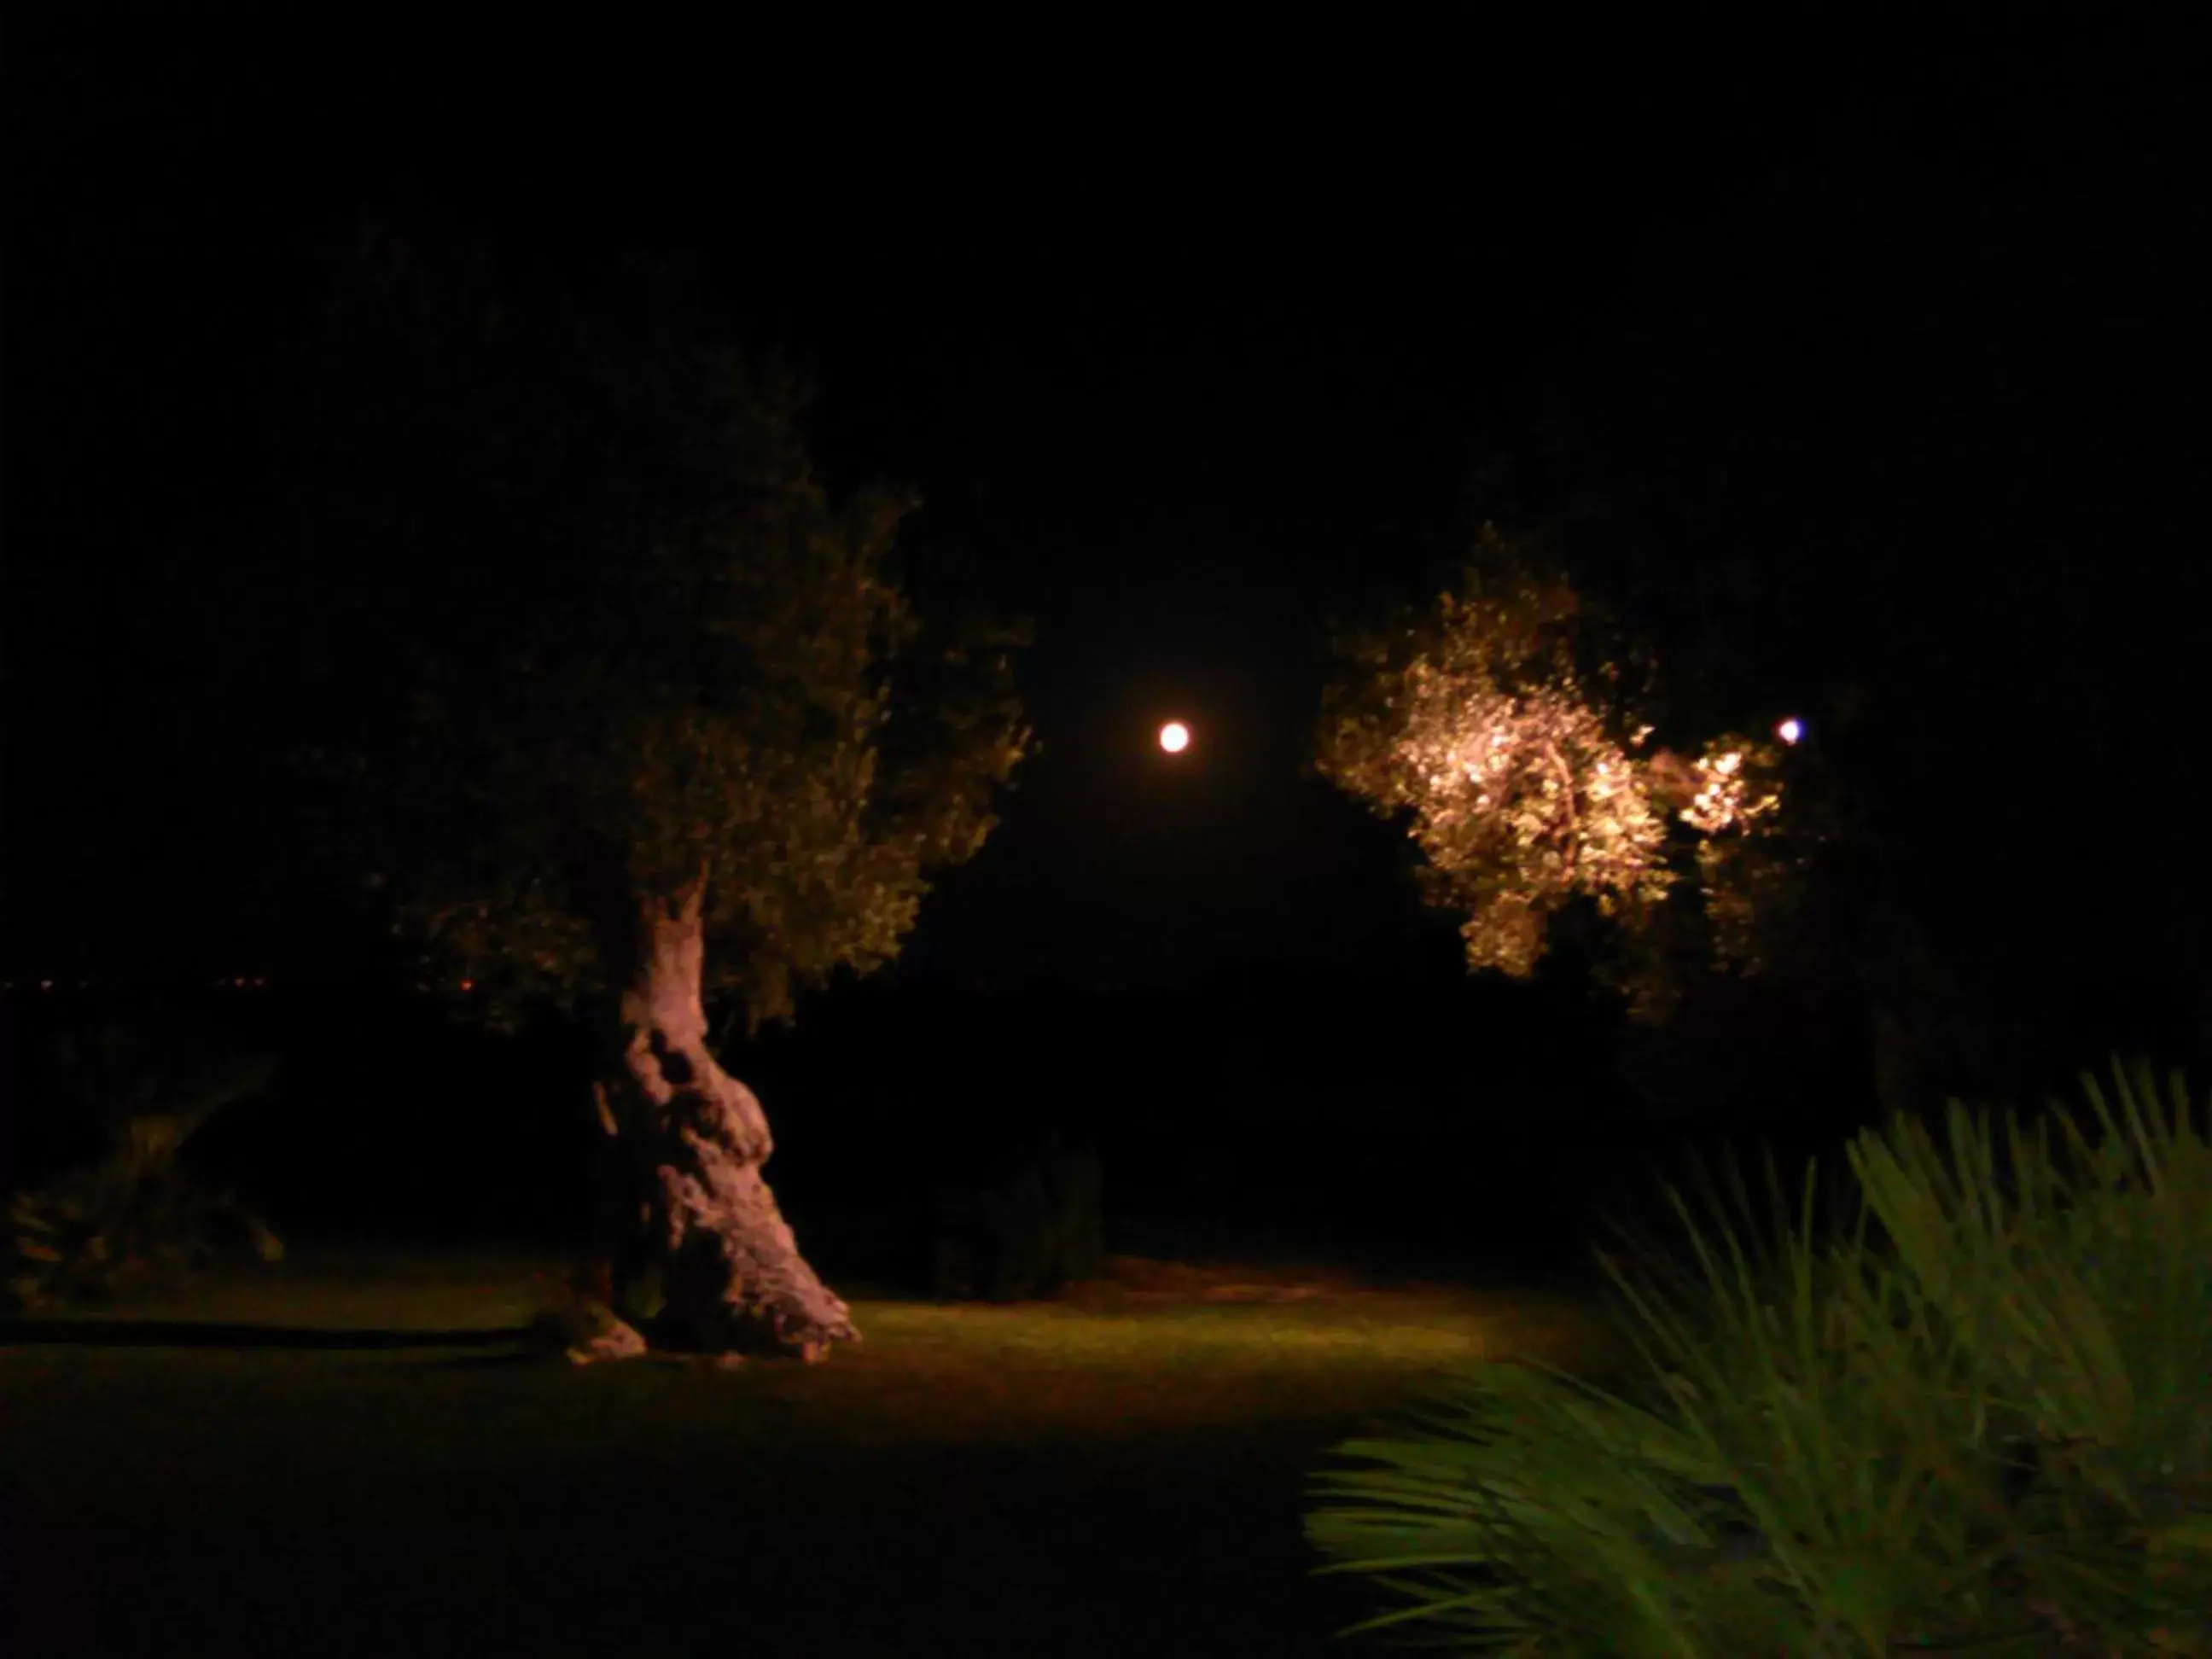 Night in Agriturismo Masseria Alberotanza